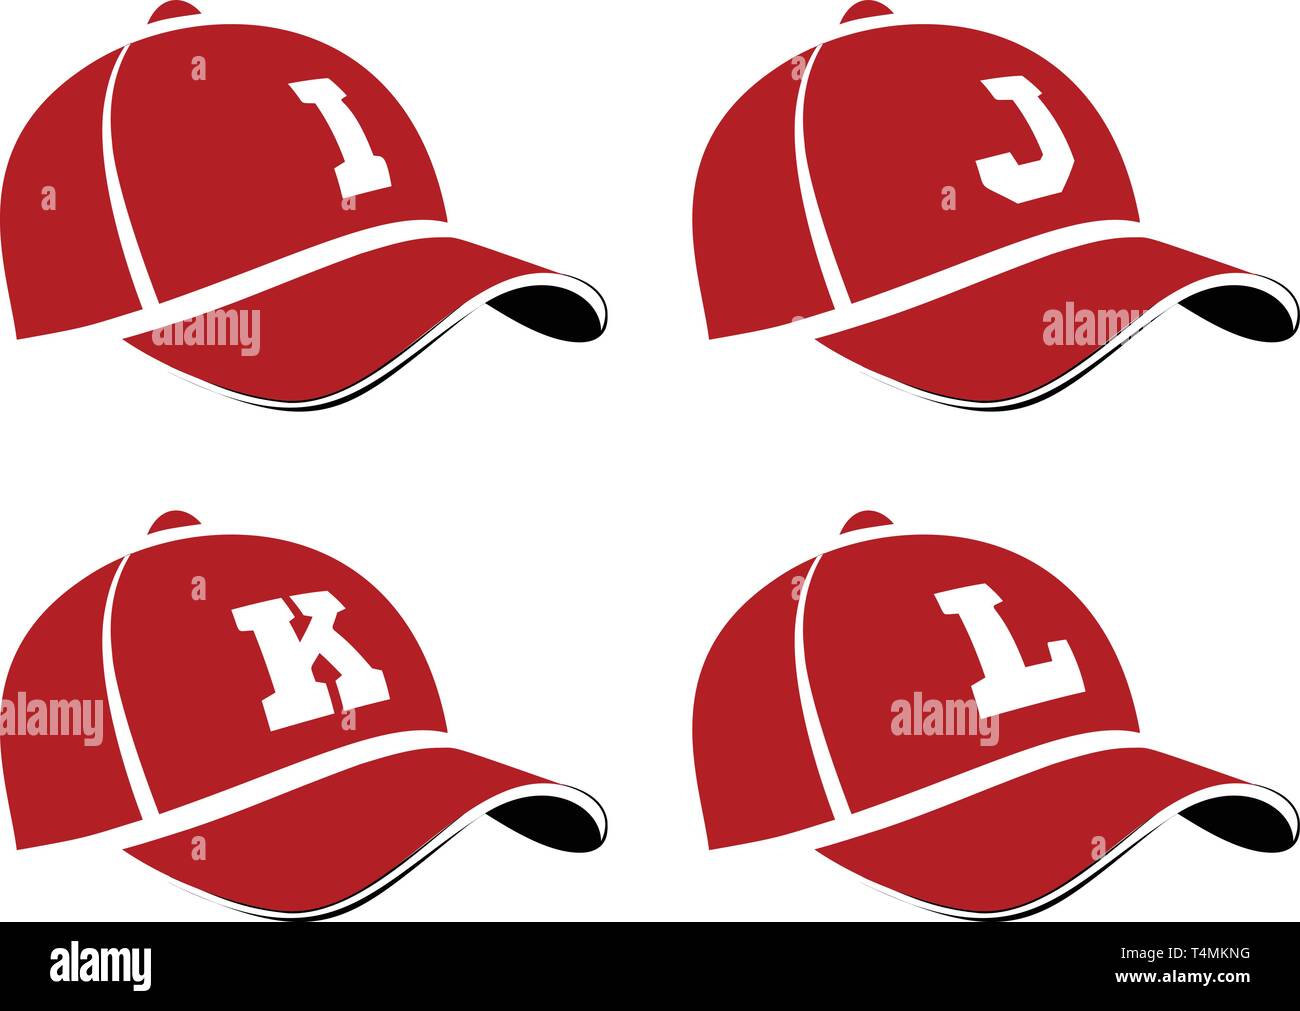 I cappelli da baseball con lettere maiuscole dell'alfabeto, può essere utilizzato come lettore di abbreviazioni dei nomi o nomi di squadra. Illustrazione Vettoriale Illustrazione Vettoriale